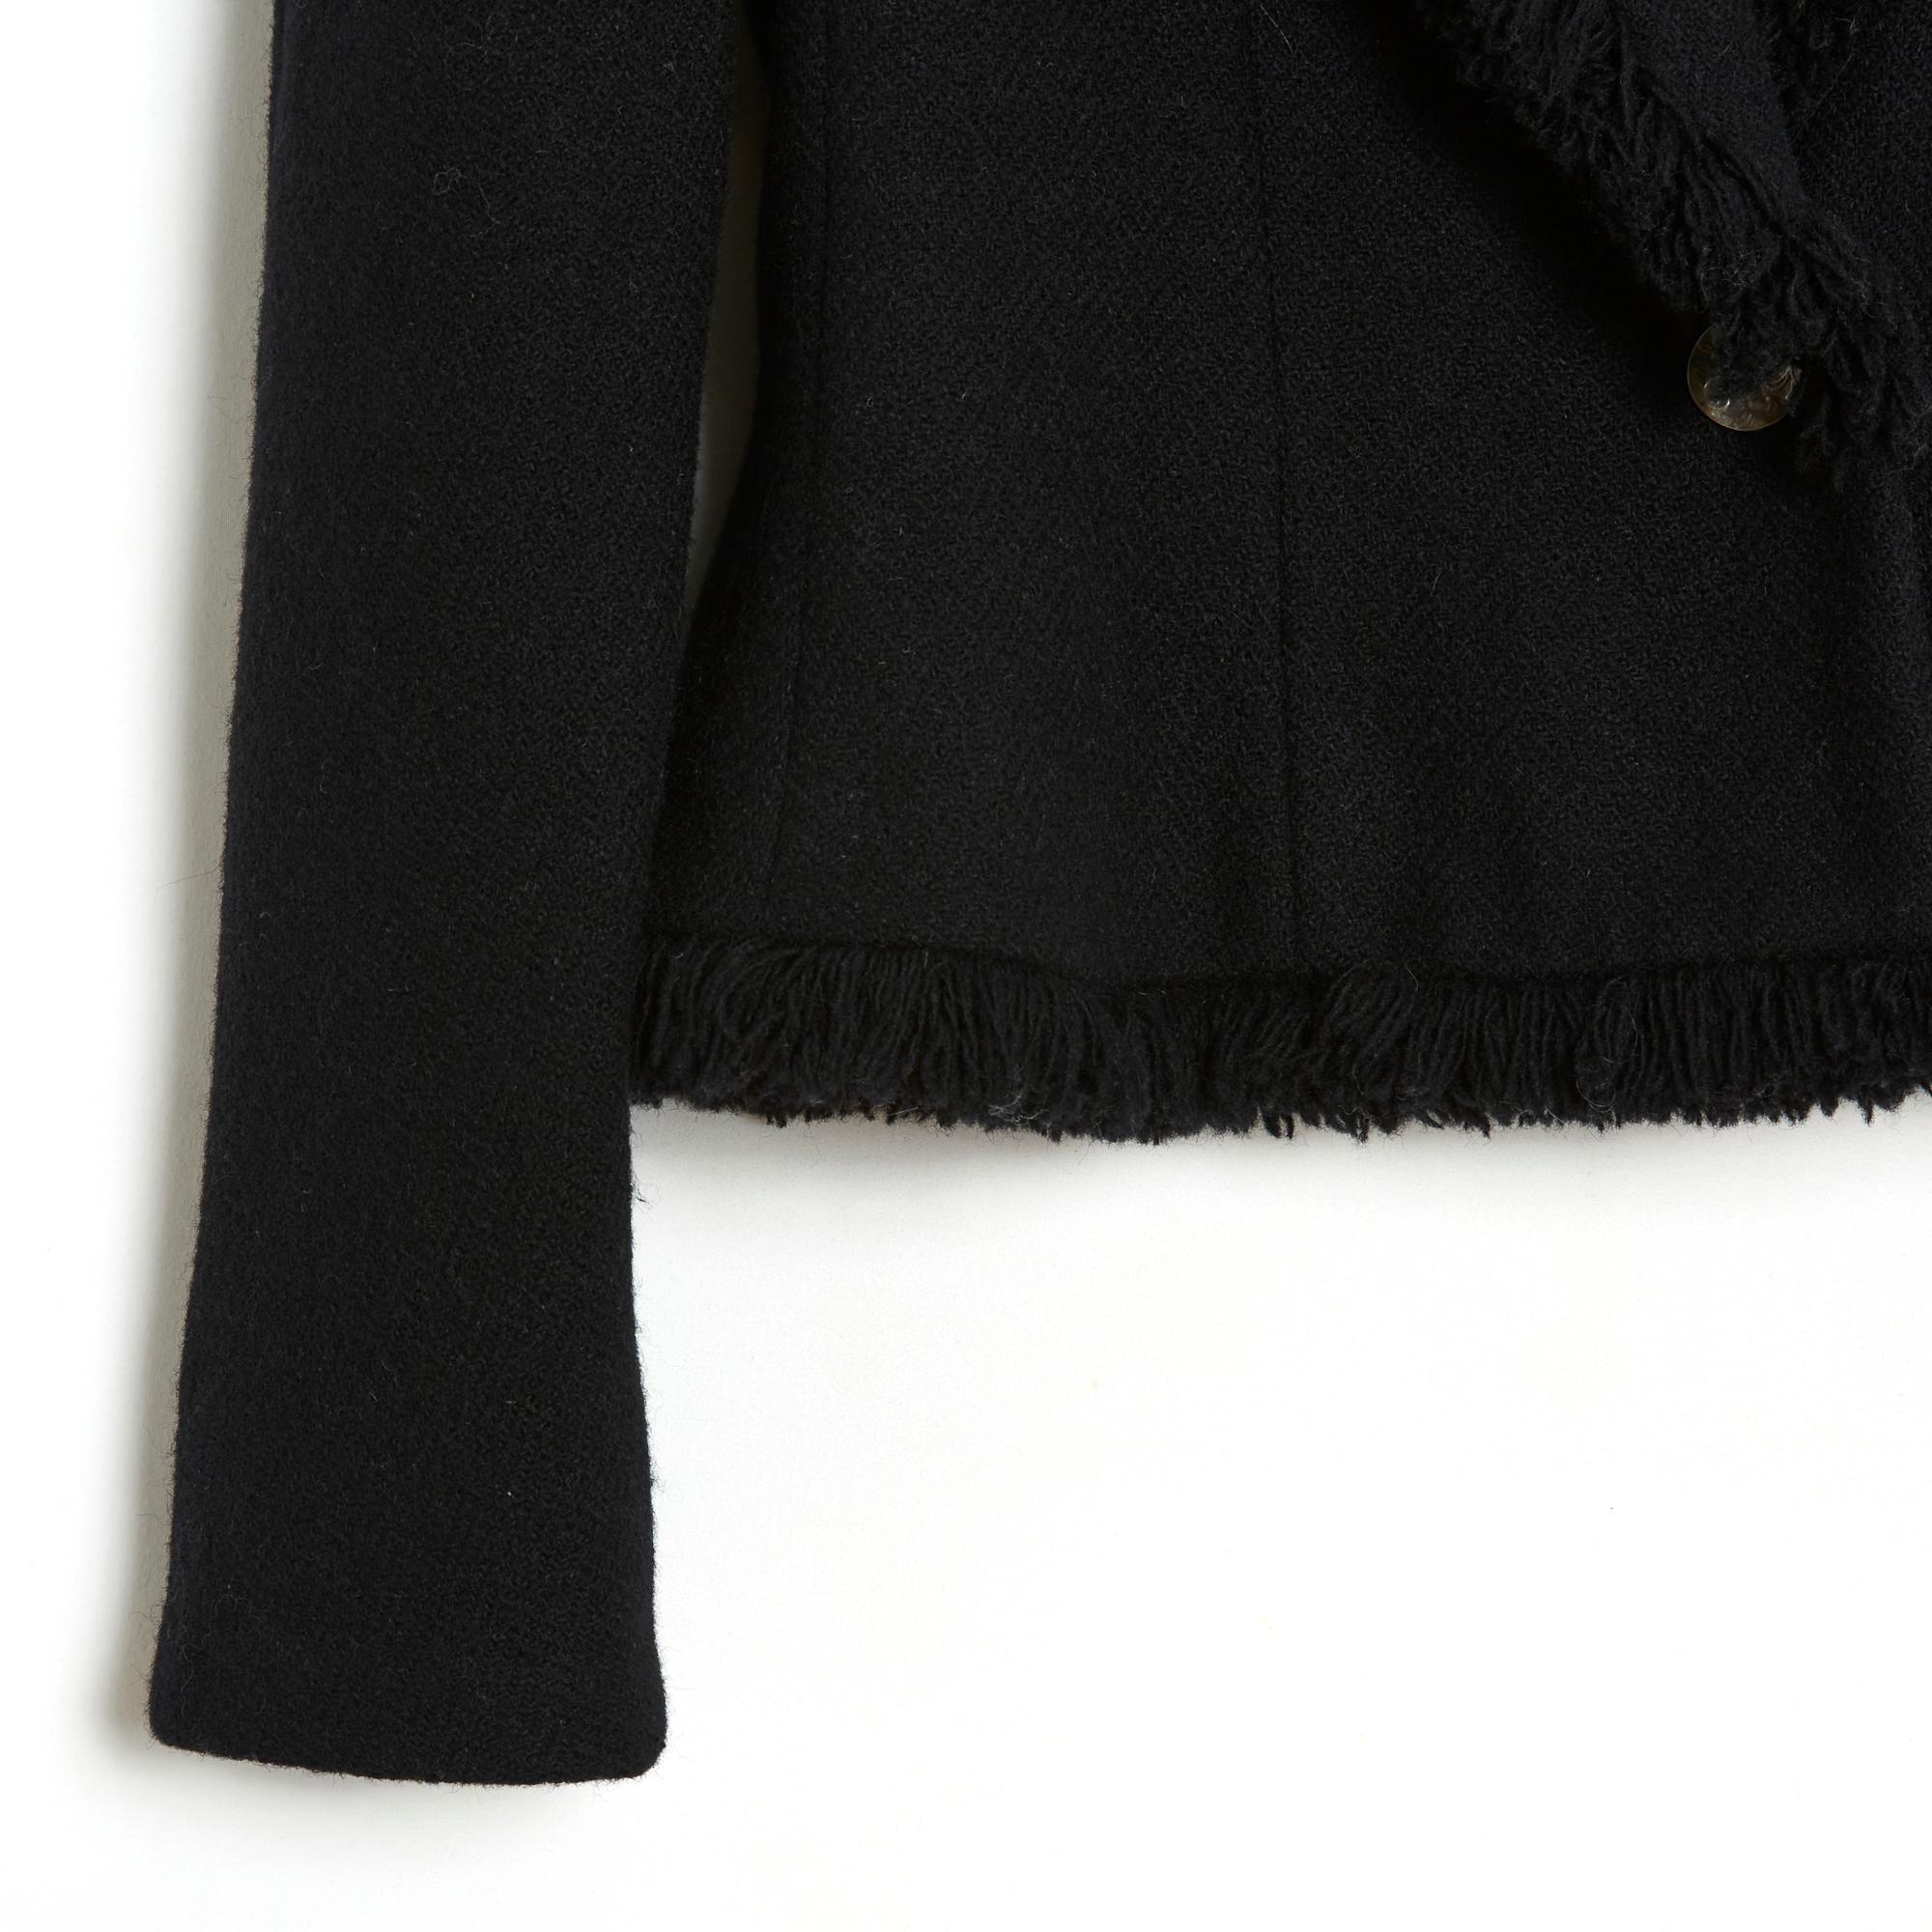 Jacke Christian Dior aus der Herbst-Winter-Kollektion 2008 von John Galliano, Bar-Modell aus schwarzer Wolle mit ausgefransten Rändern, Schalkragen mit Knopfverschluss, 2 ausgefranste Revers-Taschen auf der Hüfte, lange Raglanärmel, Futter aus